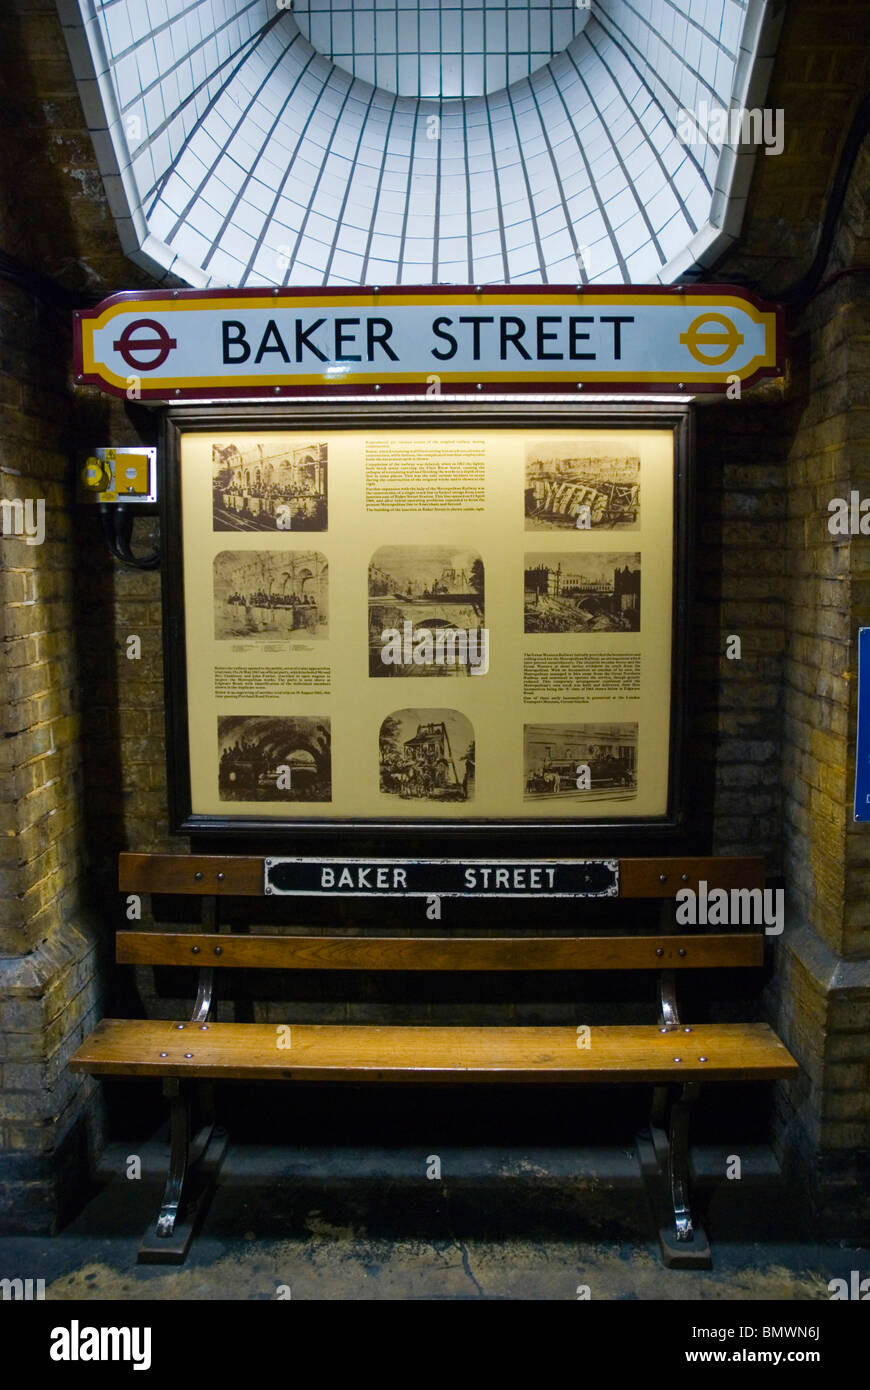 La station de métro Baker Street Marylebone Londres Angleterre Royaume-Uni Europe centrale Banque D'Images